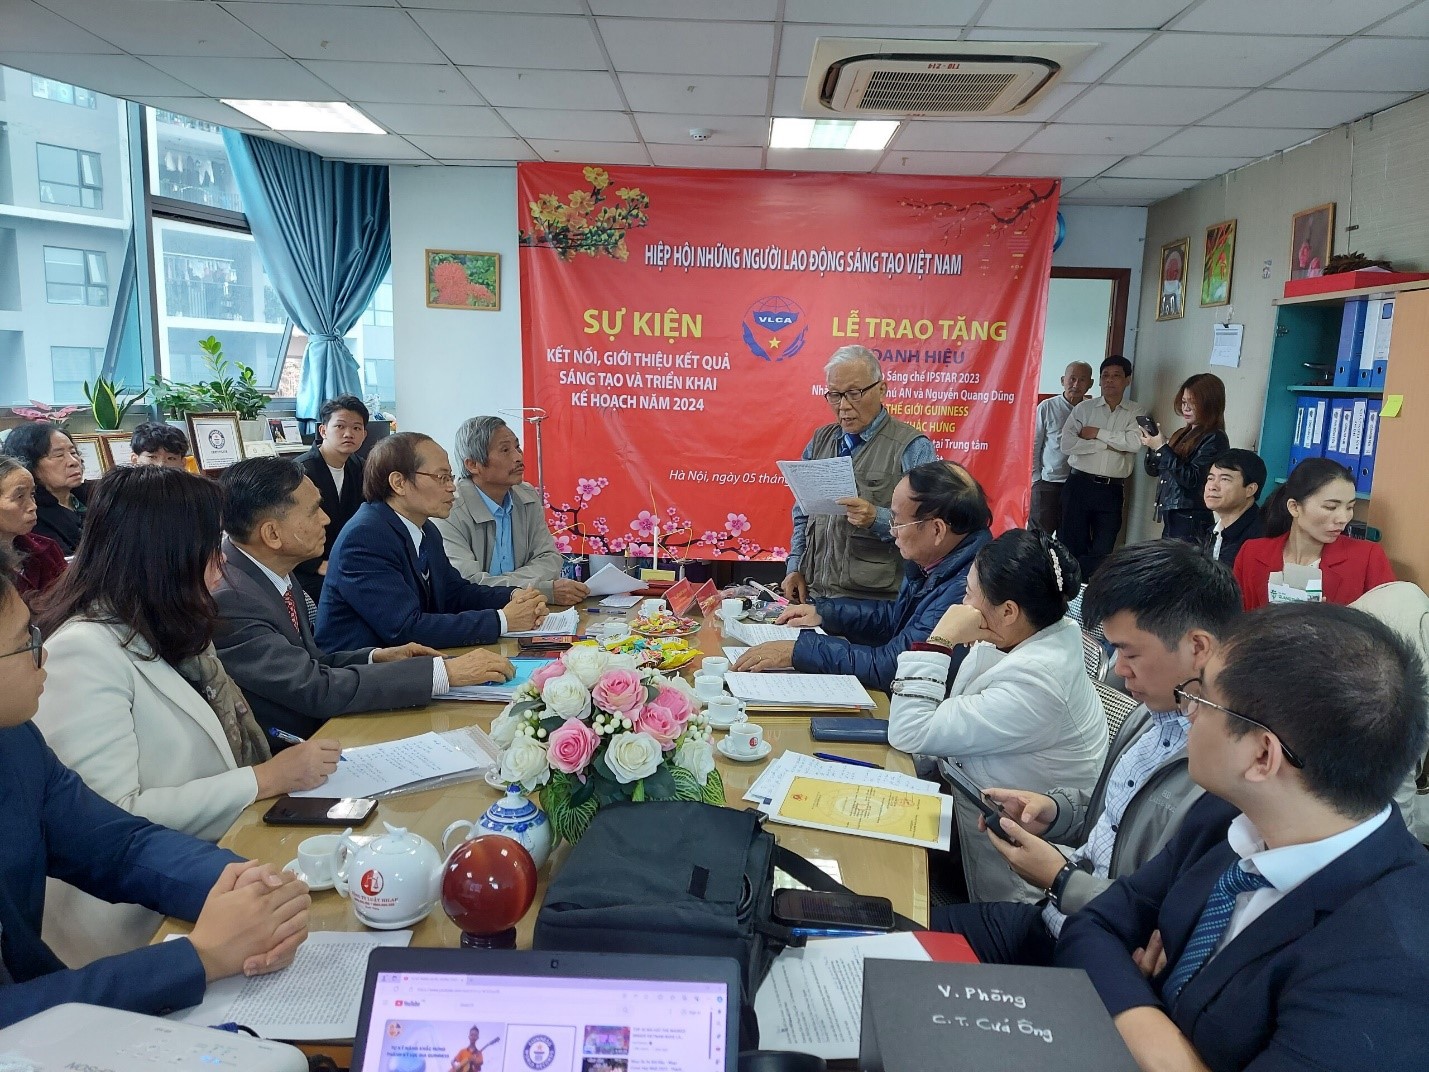 Hiệp hội Những người lao động sáng tạo Việt Nam tổ chức hội nghị Kết nối, giới thiệu kết quả sáng tạo và lễ trao Danh hiệu Ngôi sao sáng chế IPSTAR; Bằng kỉ lục thế giới GUINNESS - 3